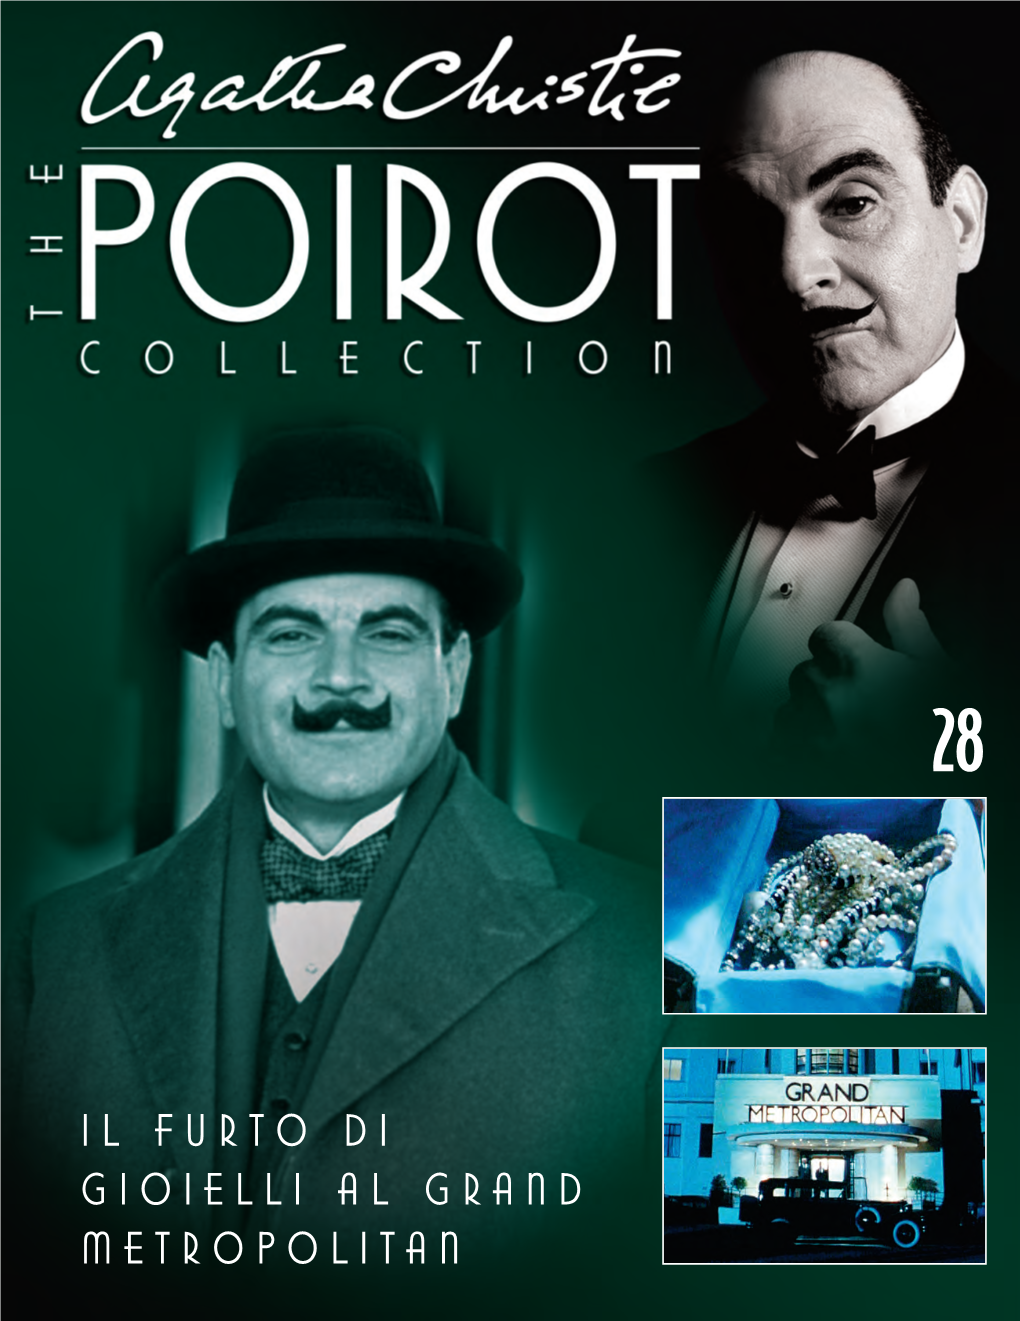 Il Furto Di Gioielli Al Grand Metropolitan Poirot Indaga 3